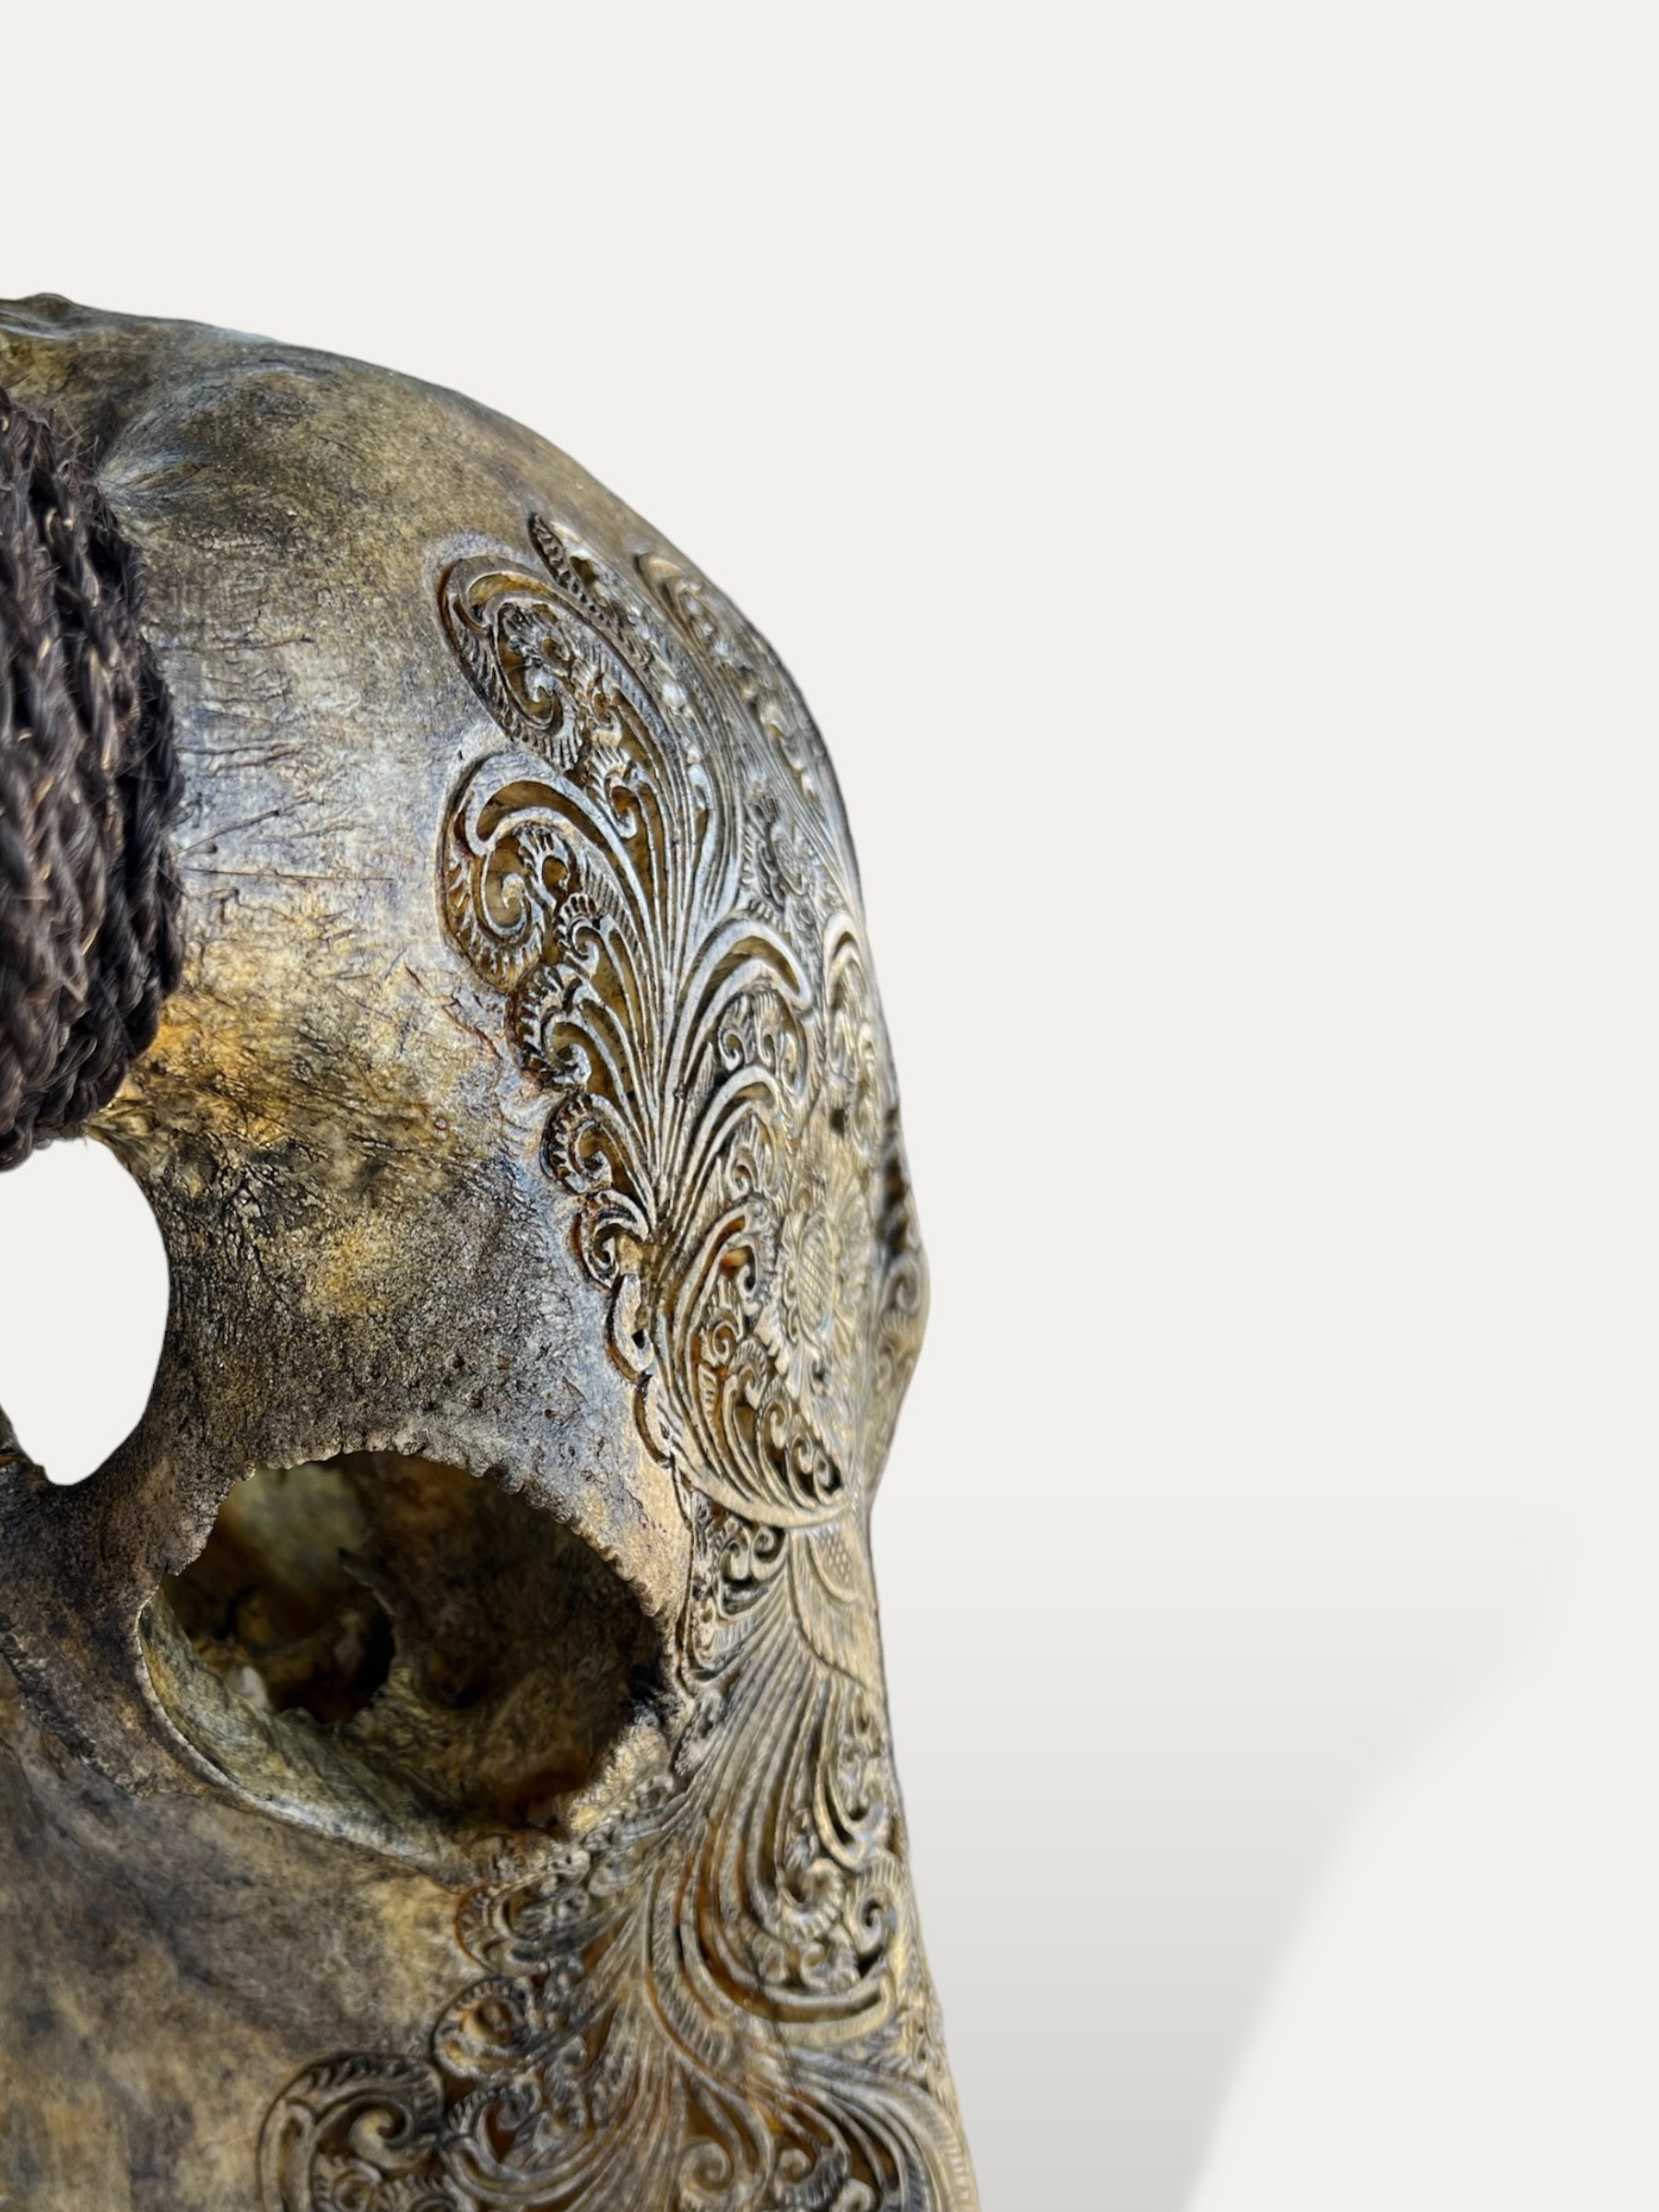 COKOHA Crâne de buffle sculpté - Hazel